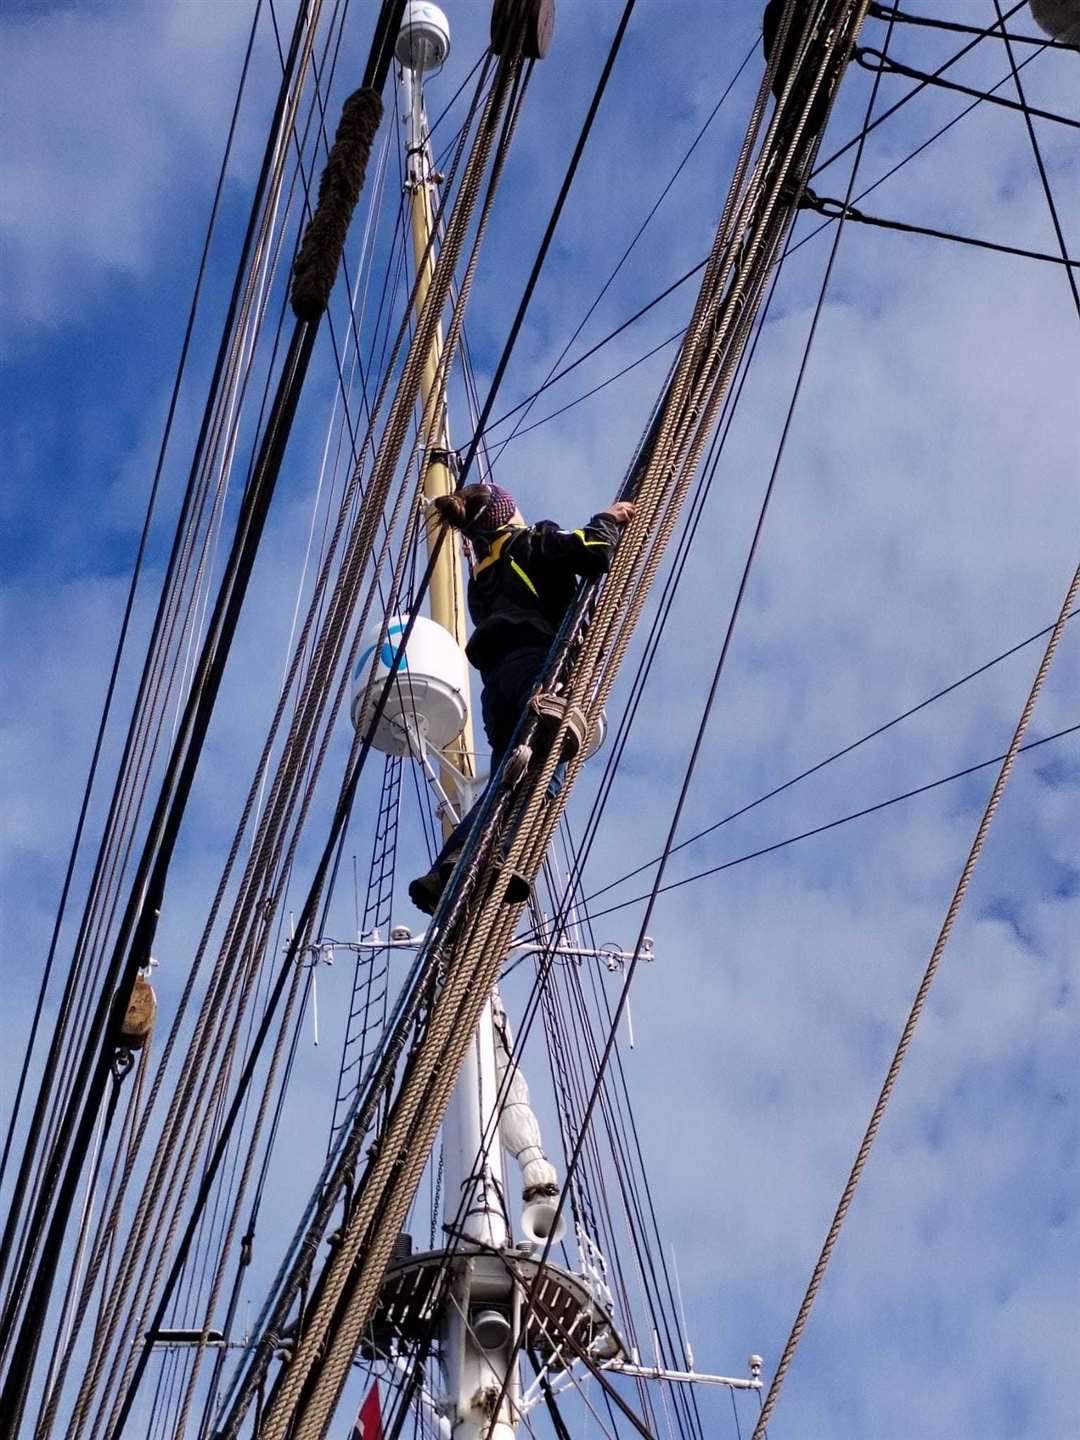 Molly managed to climb the rigging despite severe sea sickness.